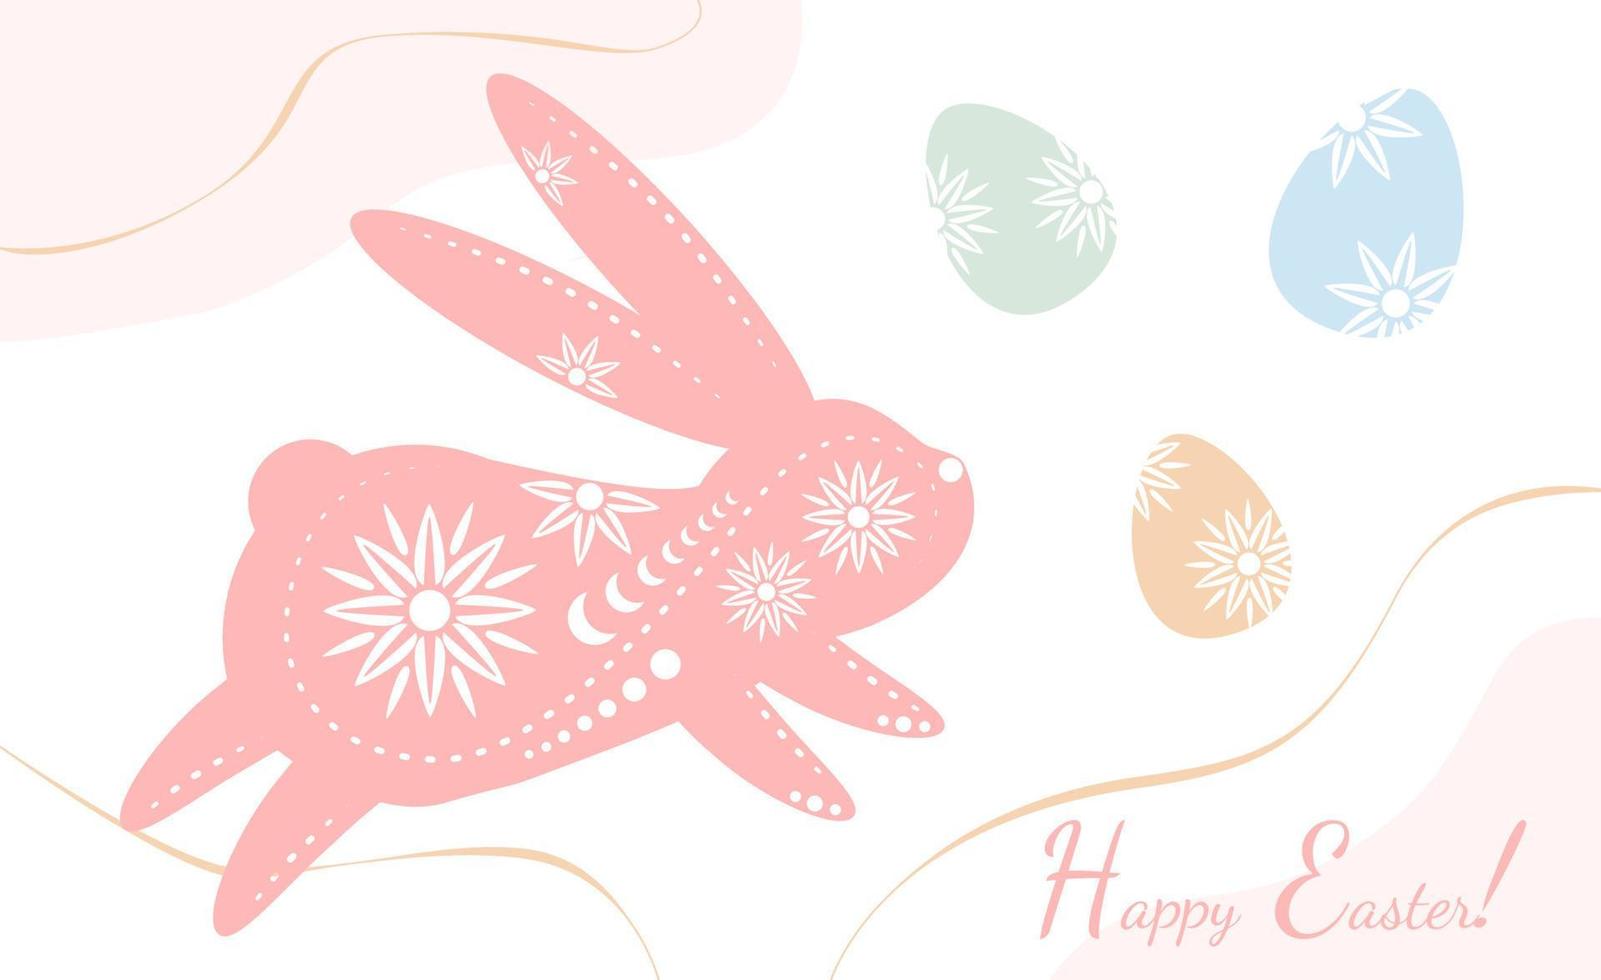 Ostern Urlaub Gruß mit dekoriert Hase Silhouette mit dekoriert traditionell farbig Eier, Christentum traditionell Urlaub Einladung, Poster, Feier Karte. vektor